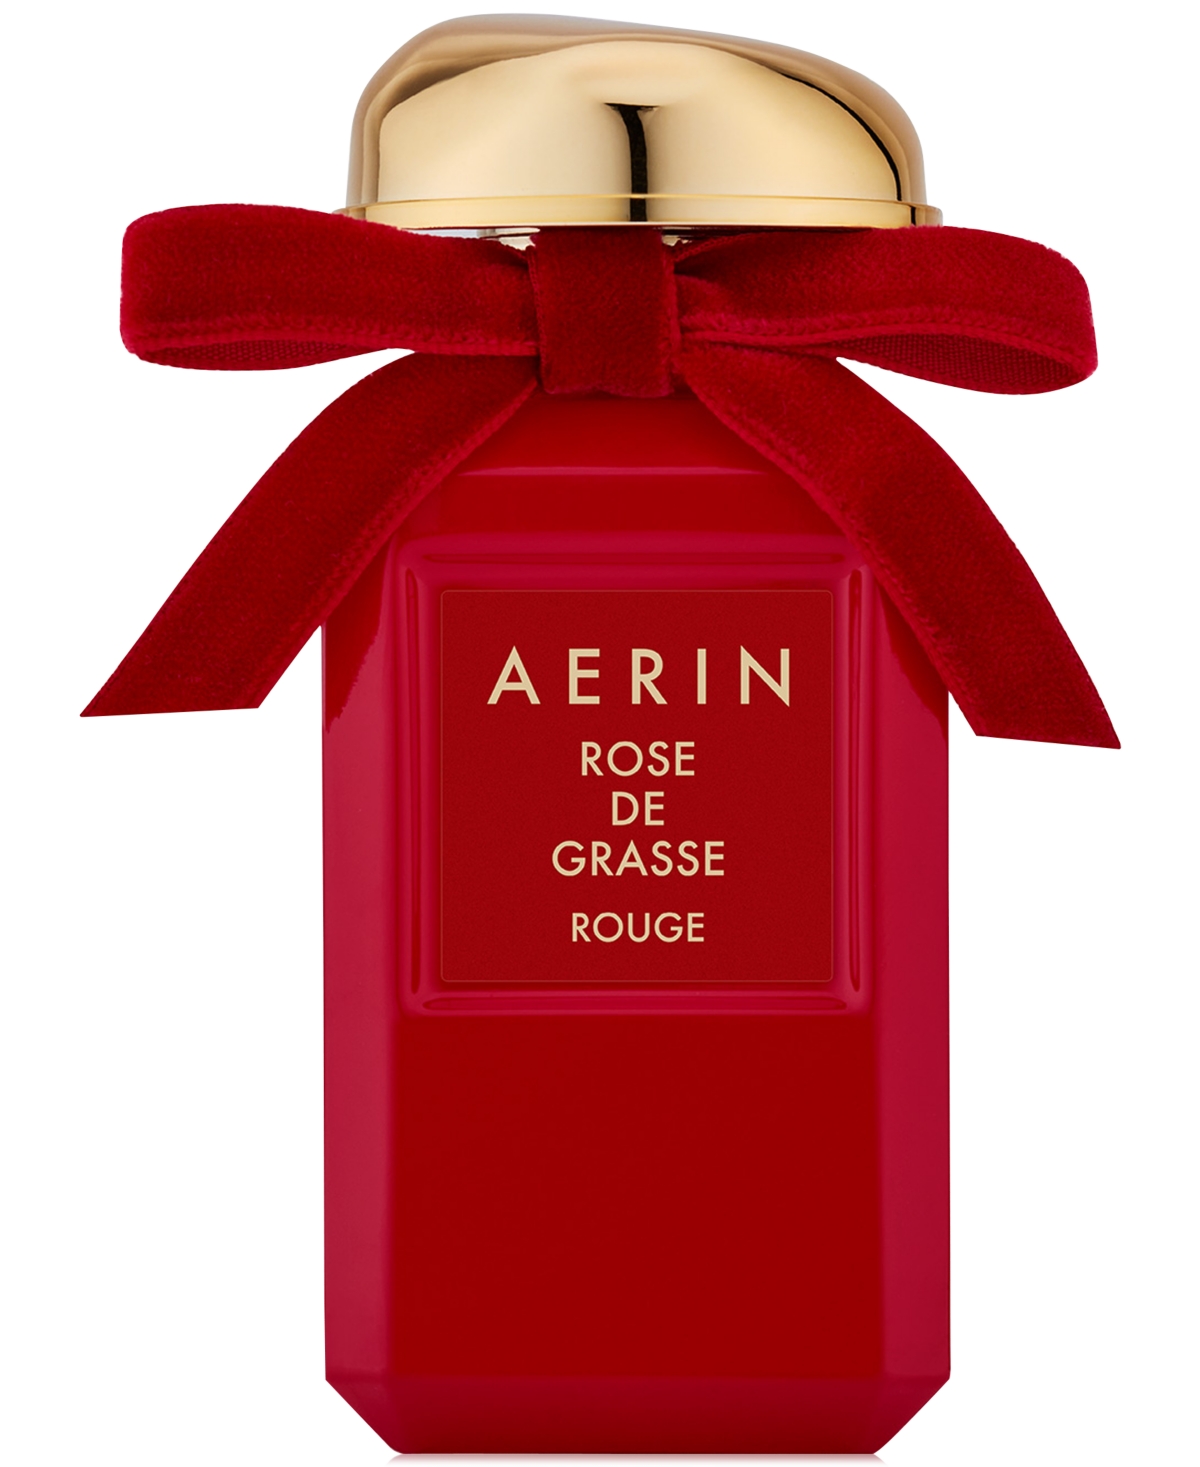 Rose de Grasse Rouge Eau de Parfum Spray, 1.7 oz.